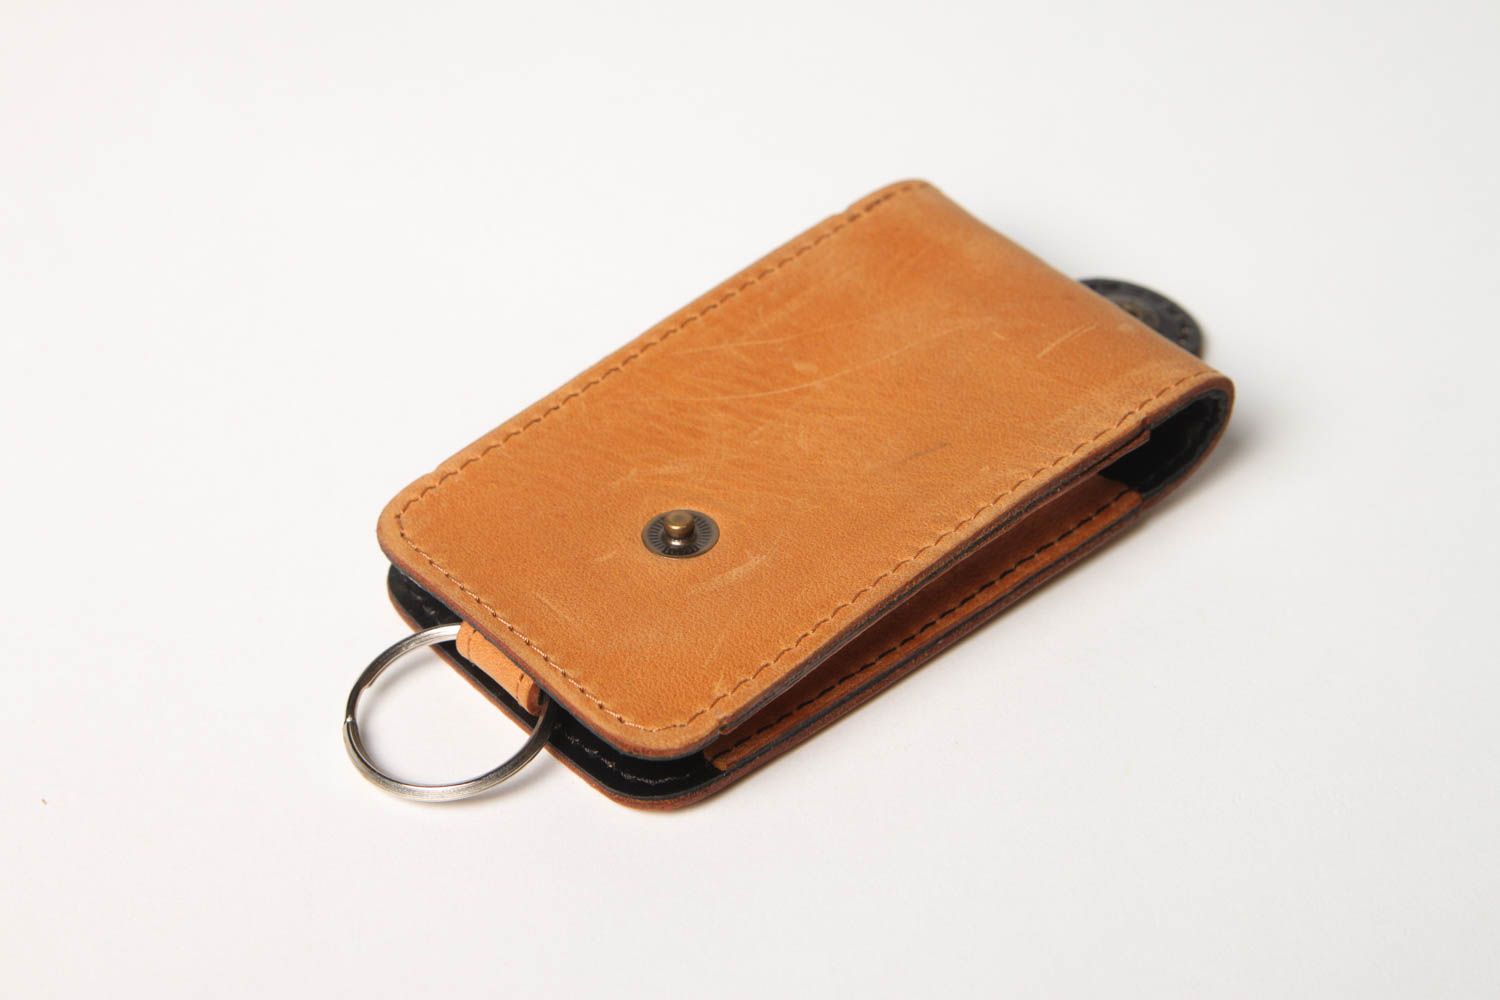 Stylish handmade leather key case unusual key holder design best gift ideas photo 3